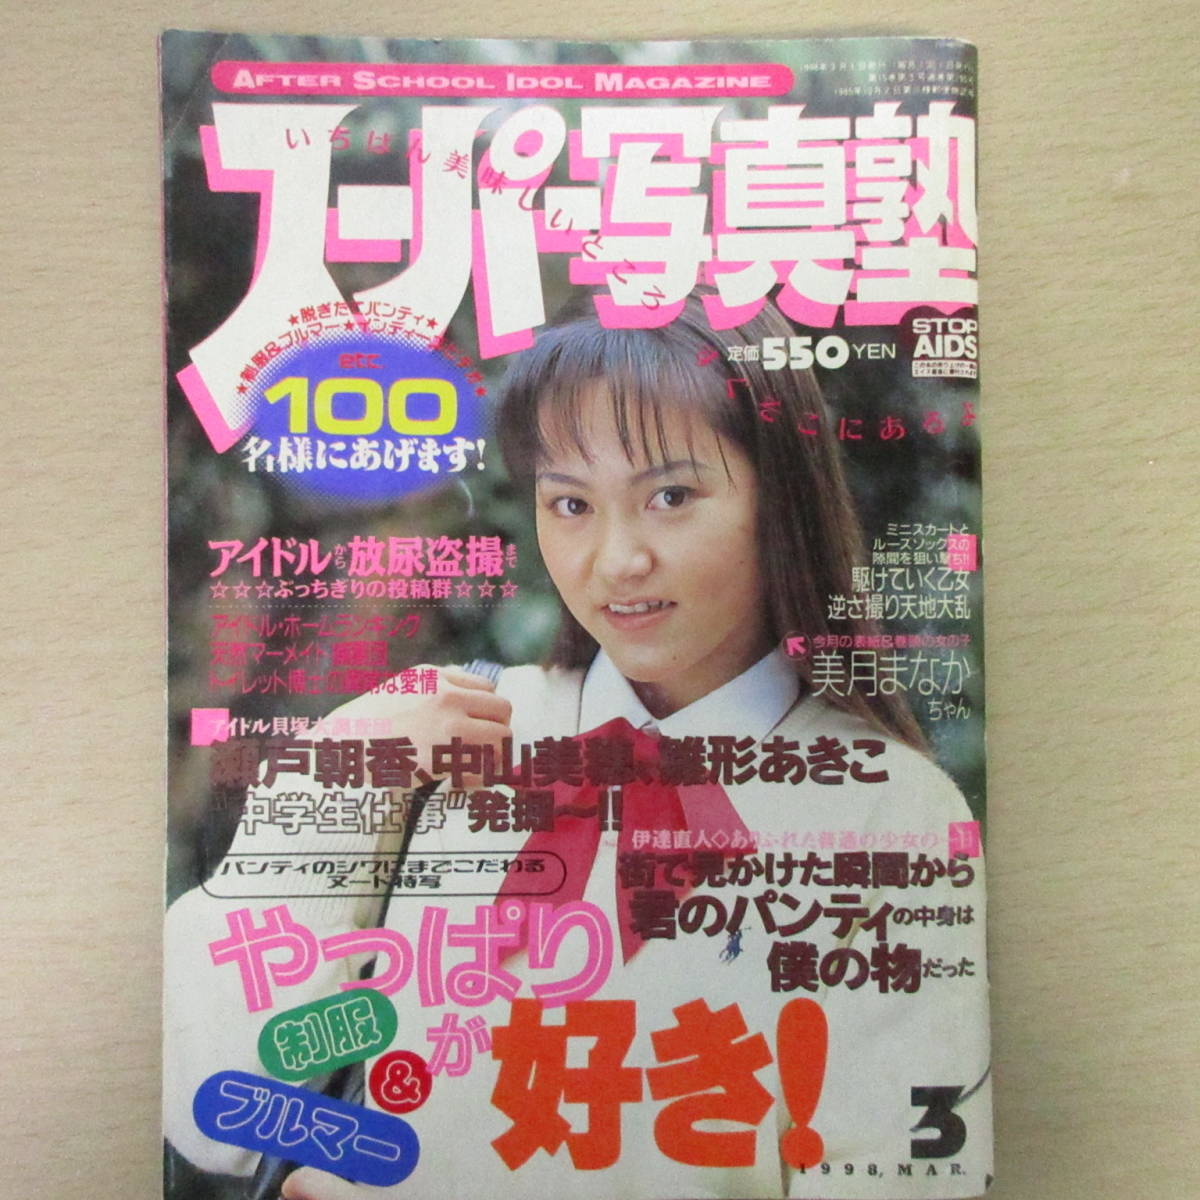 スーパー写真塾 1994年11月高梨綾香(黒田美礼) - 雑誌